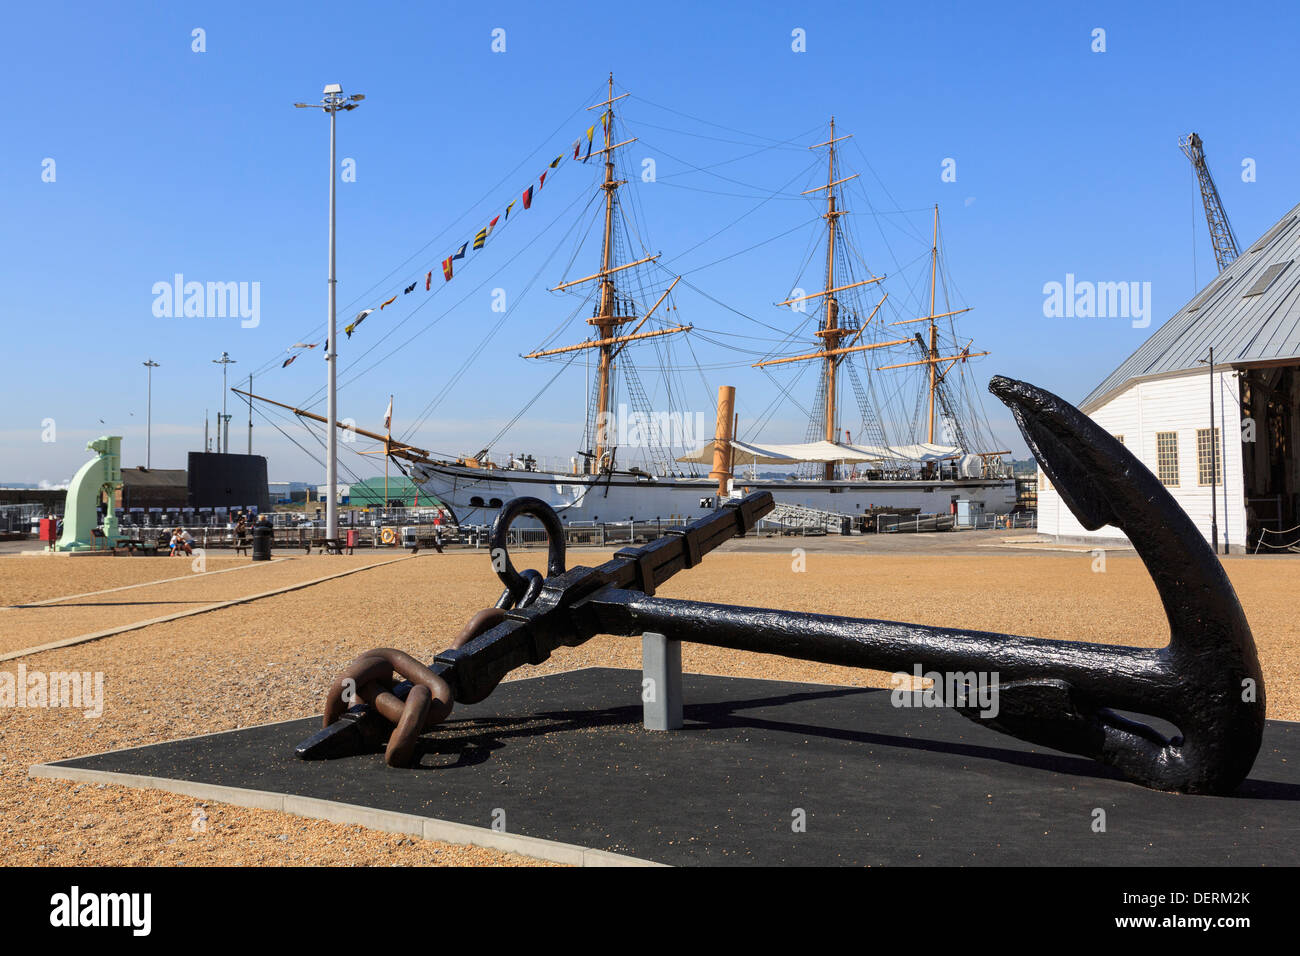 Old anchor sur l'affichage dans le chantier naval historique de Chatham, Kent, Angleterre, Royaume-Uni, Angleterre Banque D'Images